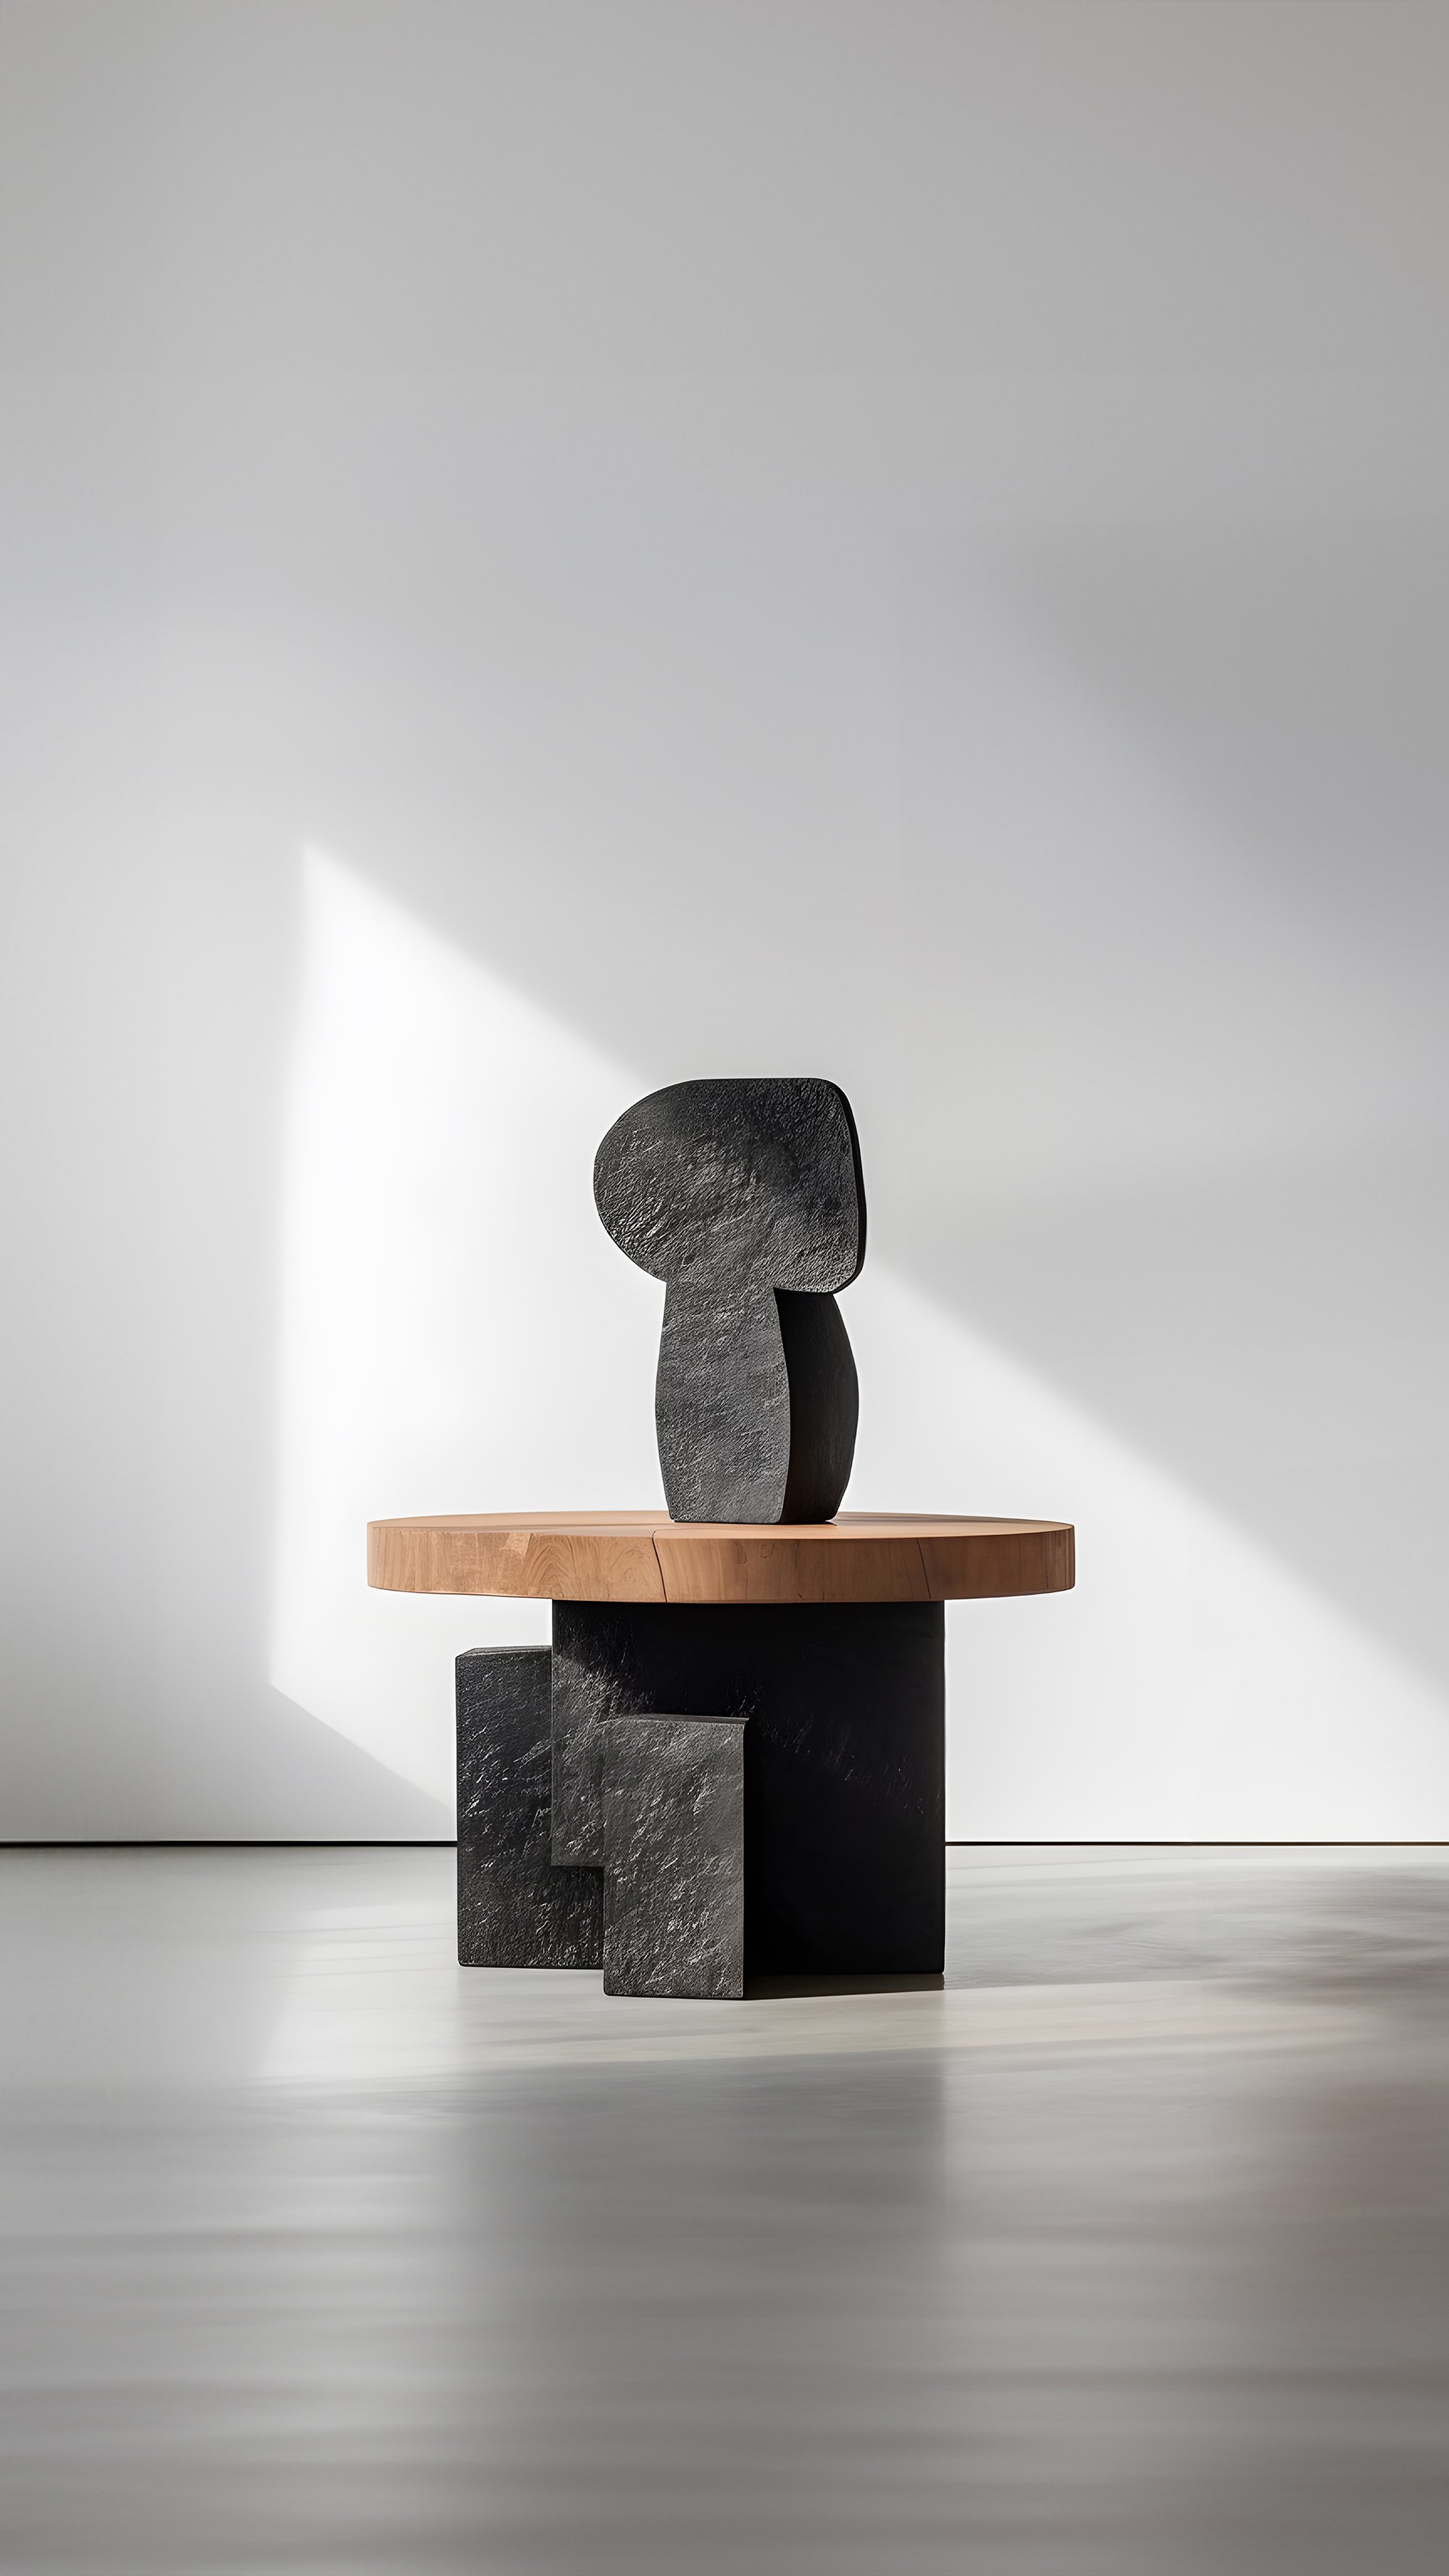 Artful Oak Unseen Force #41 Joel Escalona's Coffee Table, Sculptural Design – 4.jpg